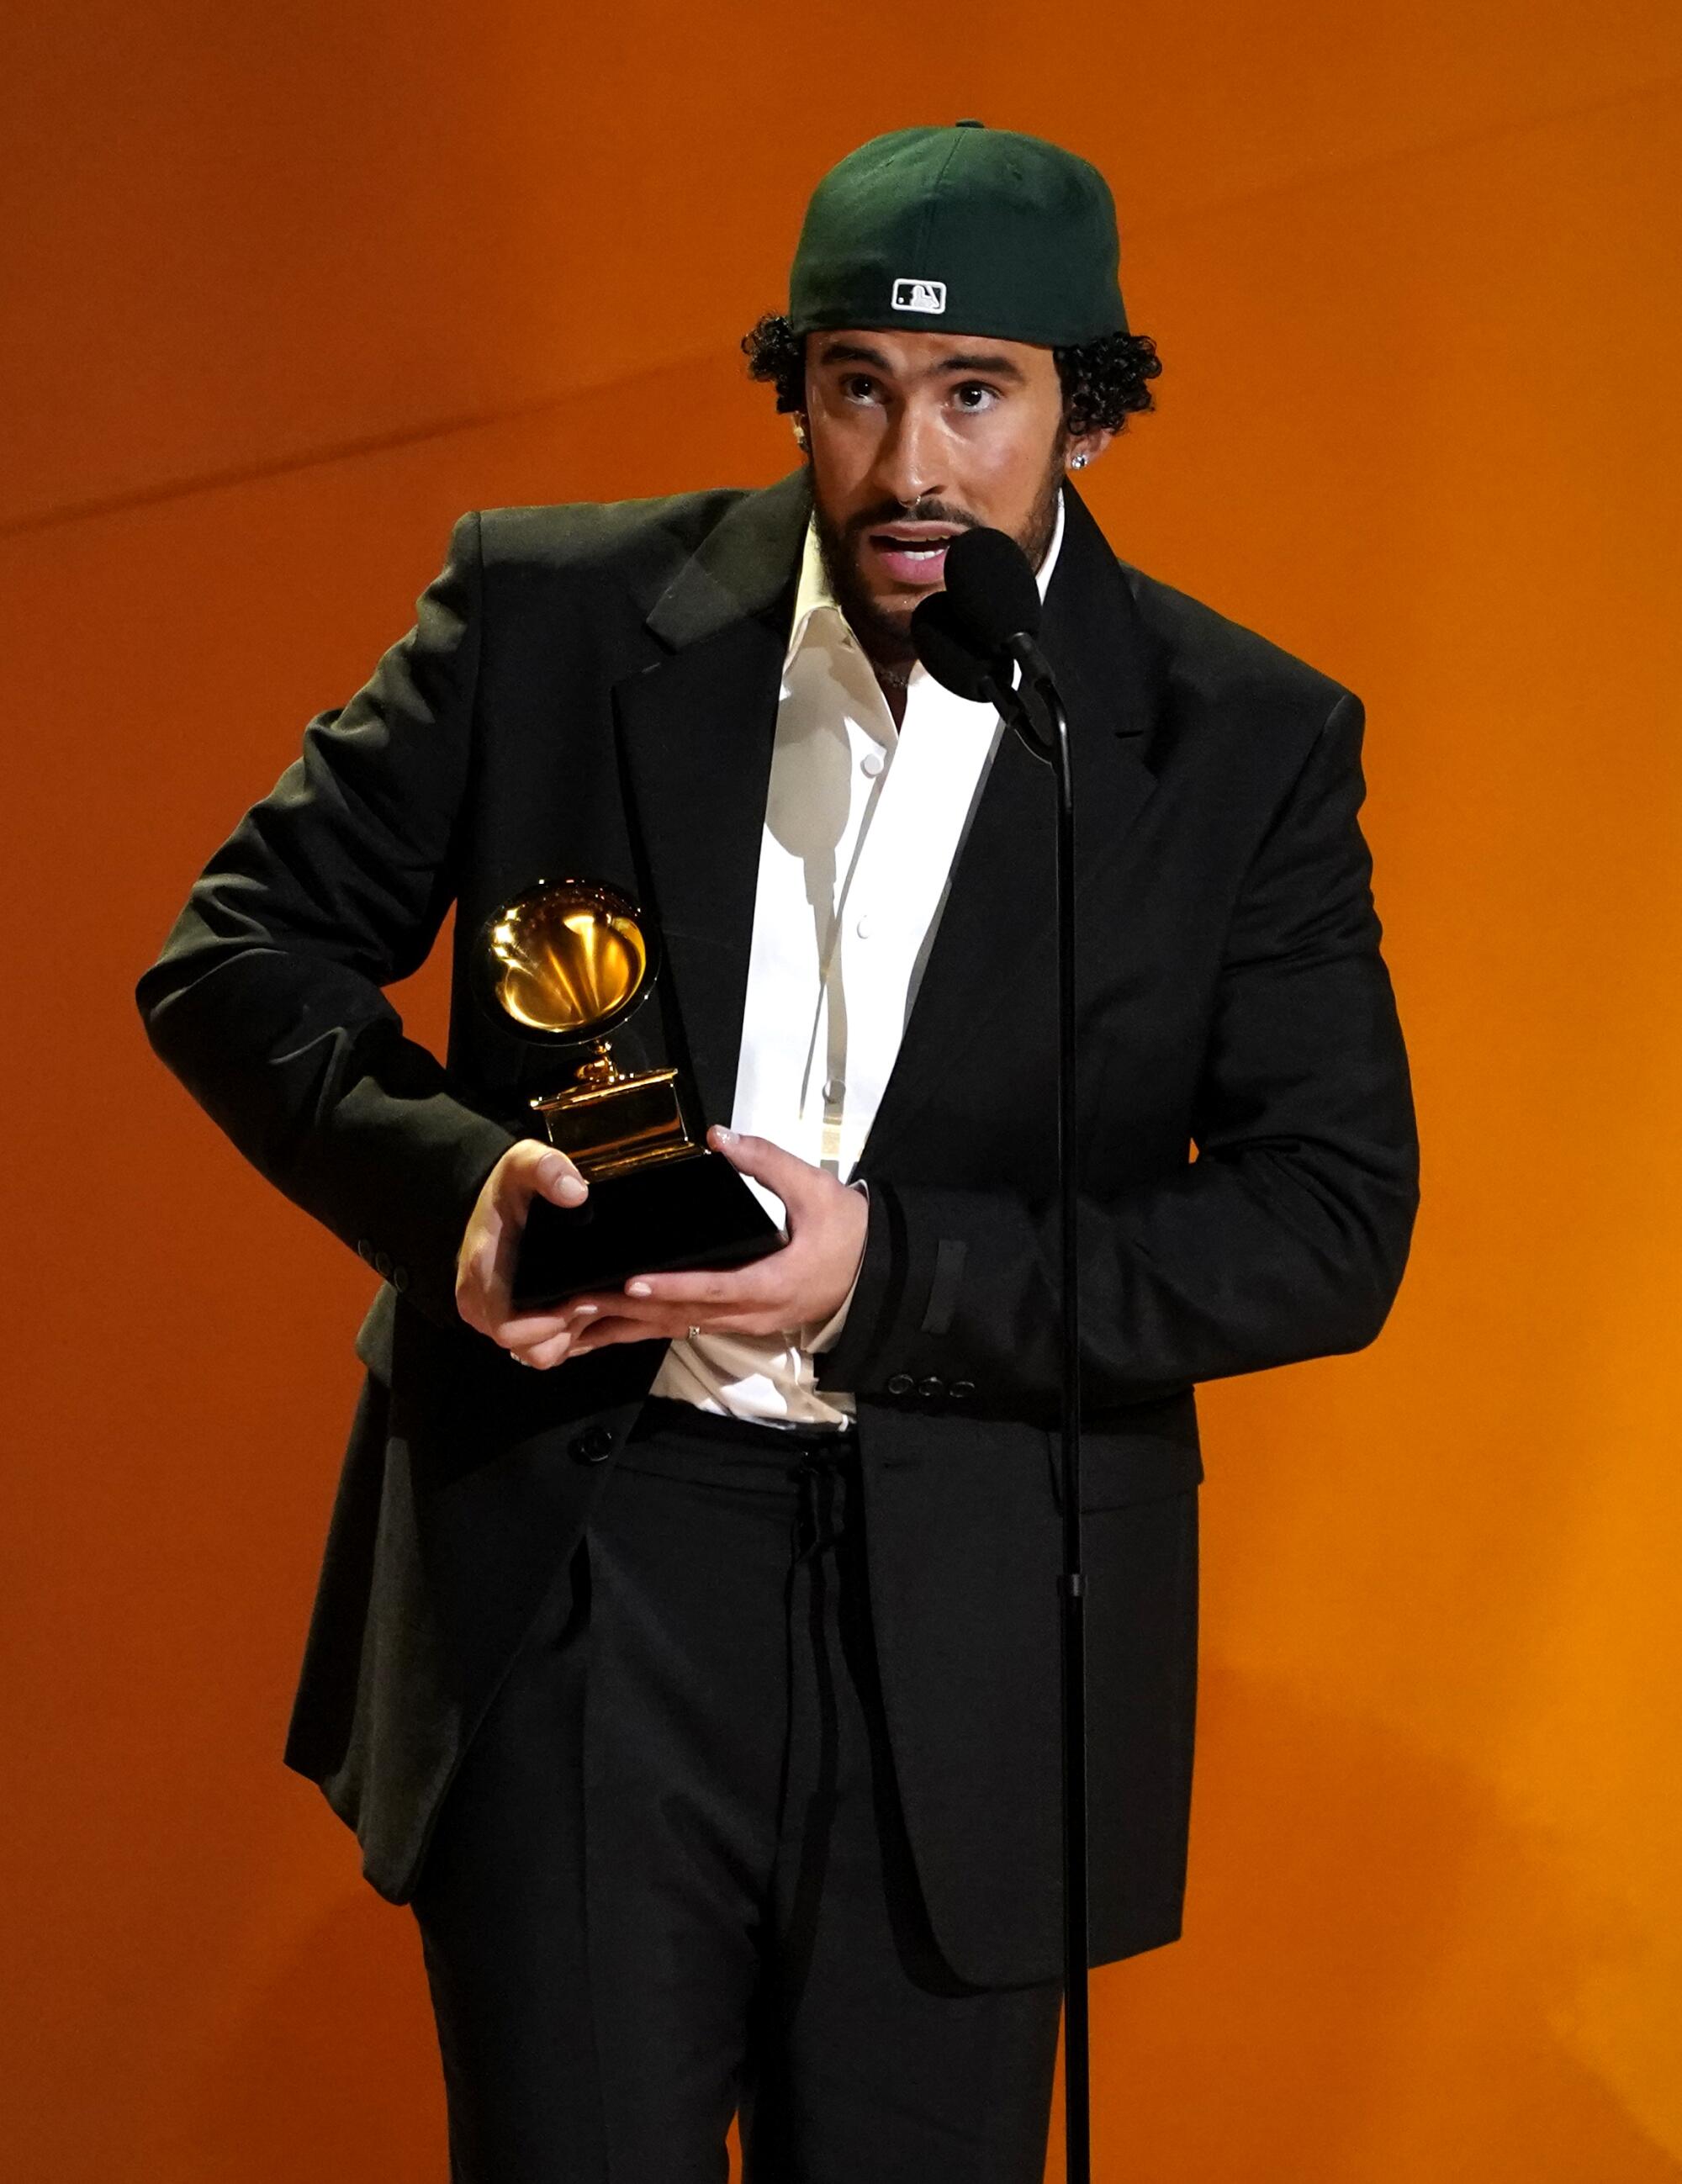 Bad Bunny recibió el Grammy a Mejor Álbum de Música Urbana por "Un Verano Sin Ti" en la entrega 65 del Grammy.